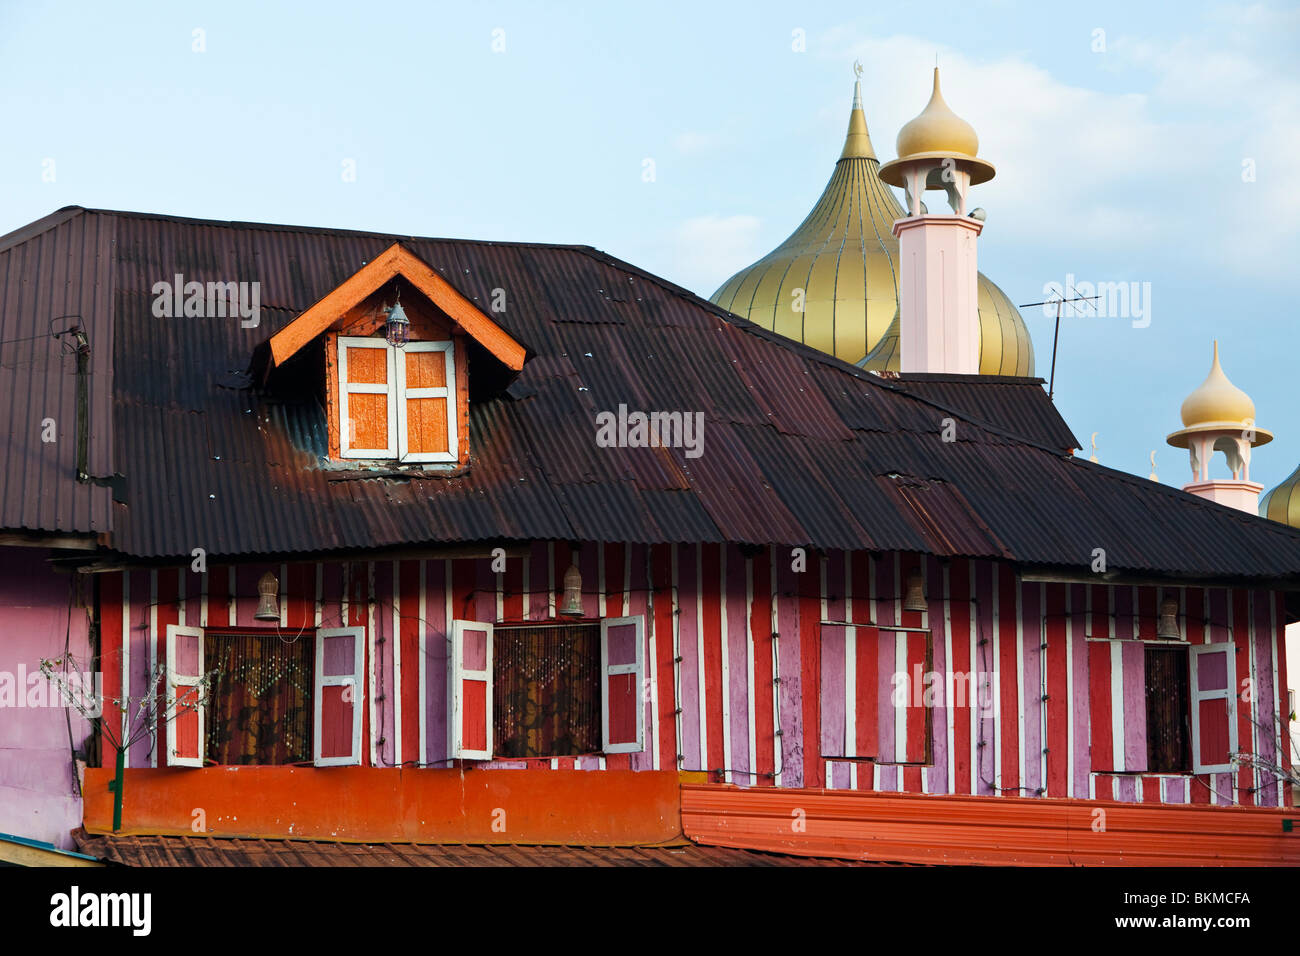 Traditional Malay shophouse. Kuching, Sarawak, Borneo, Malaysia. Stock Photo